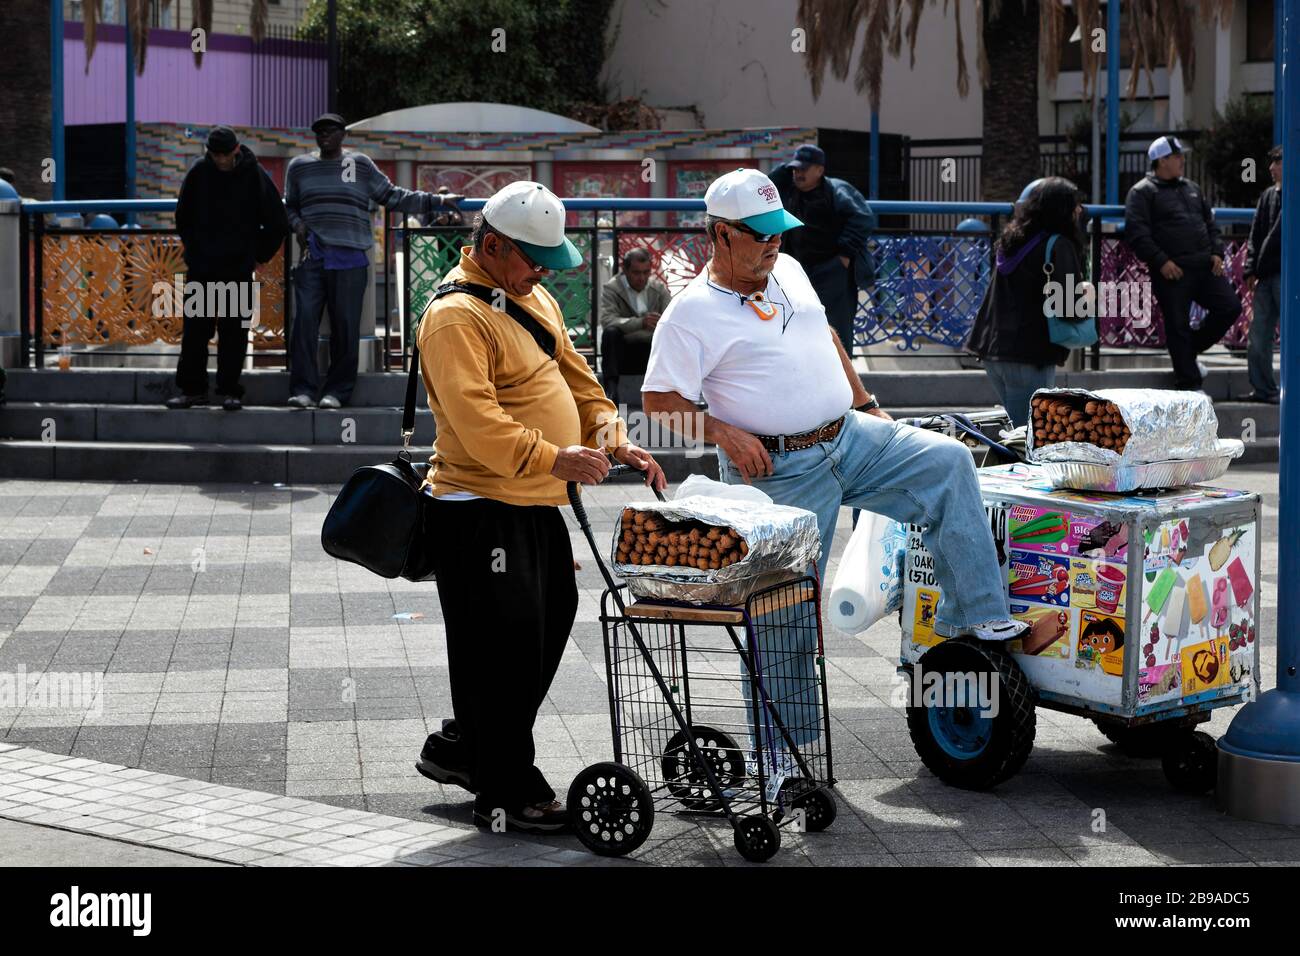 Händler von Churro und Lebensmittelkarren sprechen in einem Park, Mission District, San Francisco, Kalifornien, Vereinigte Staaten, Nordamerika, Farbe Stockfoto